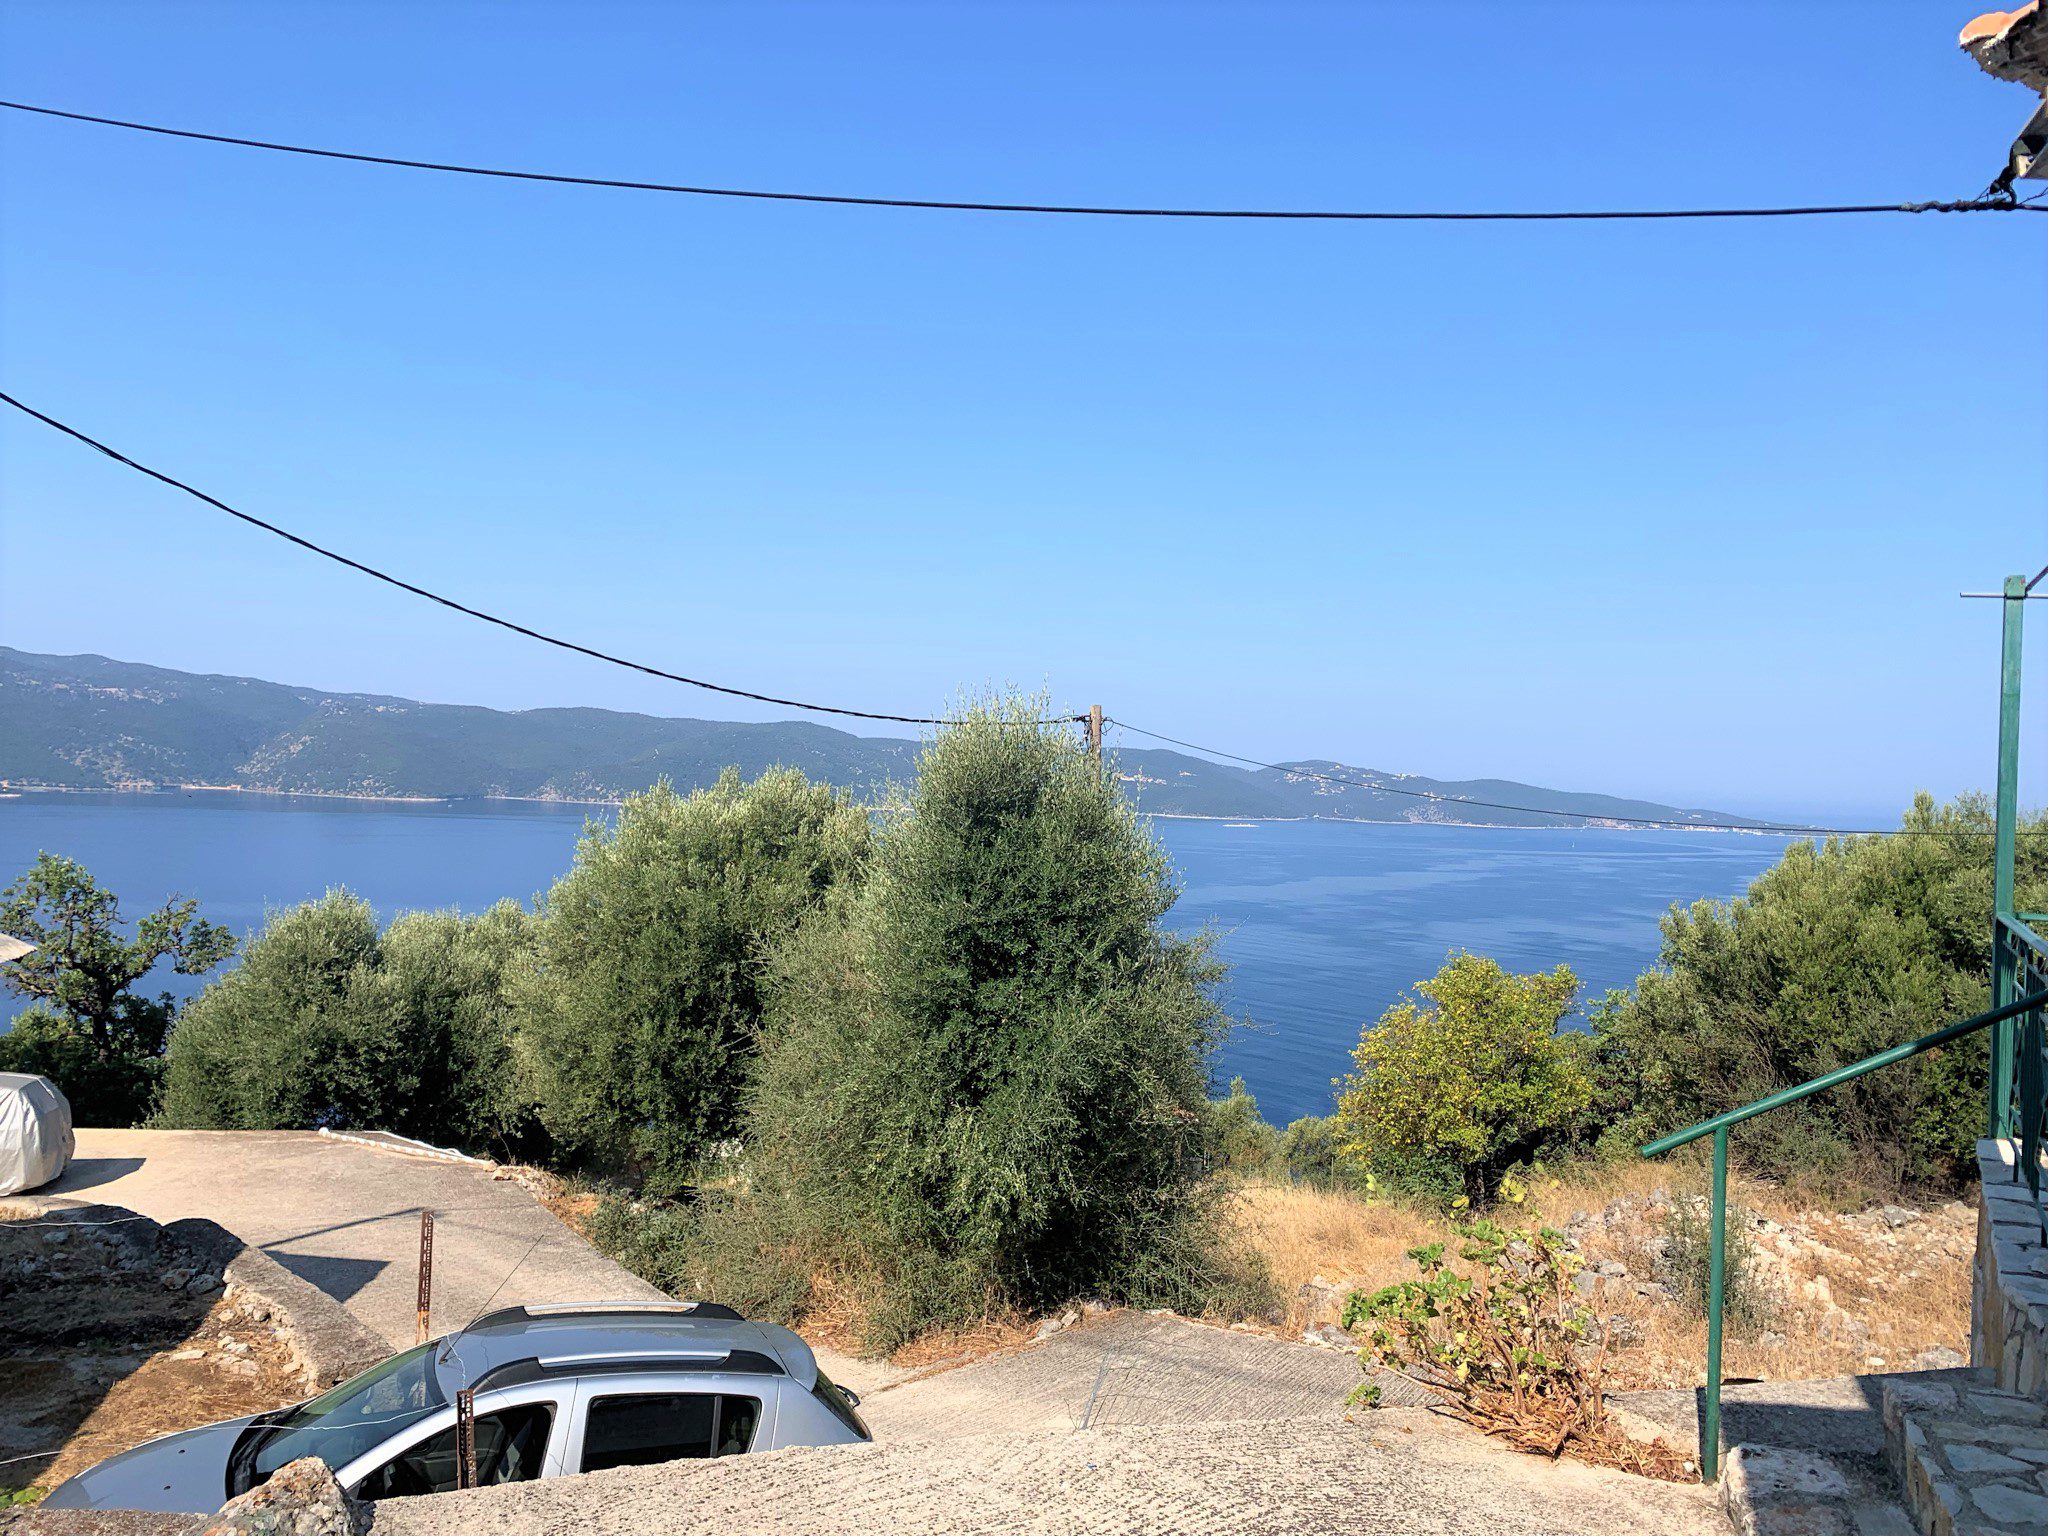 Θέα από το σπίτι προς πώληση Ιυχάκα Ελλάδα, Λευκάκι